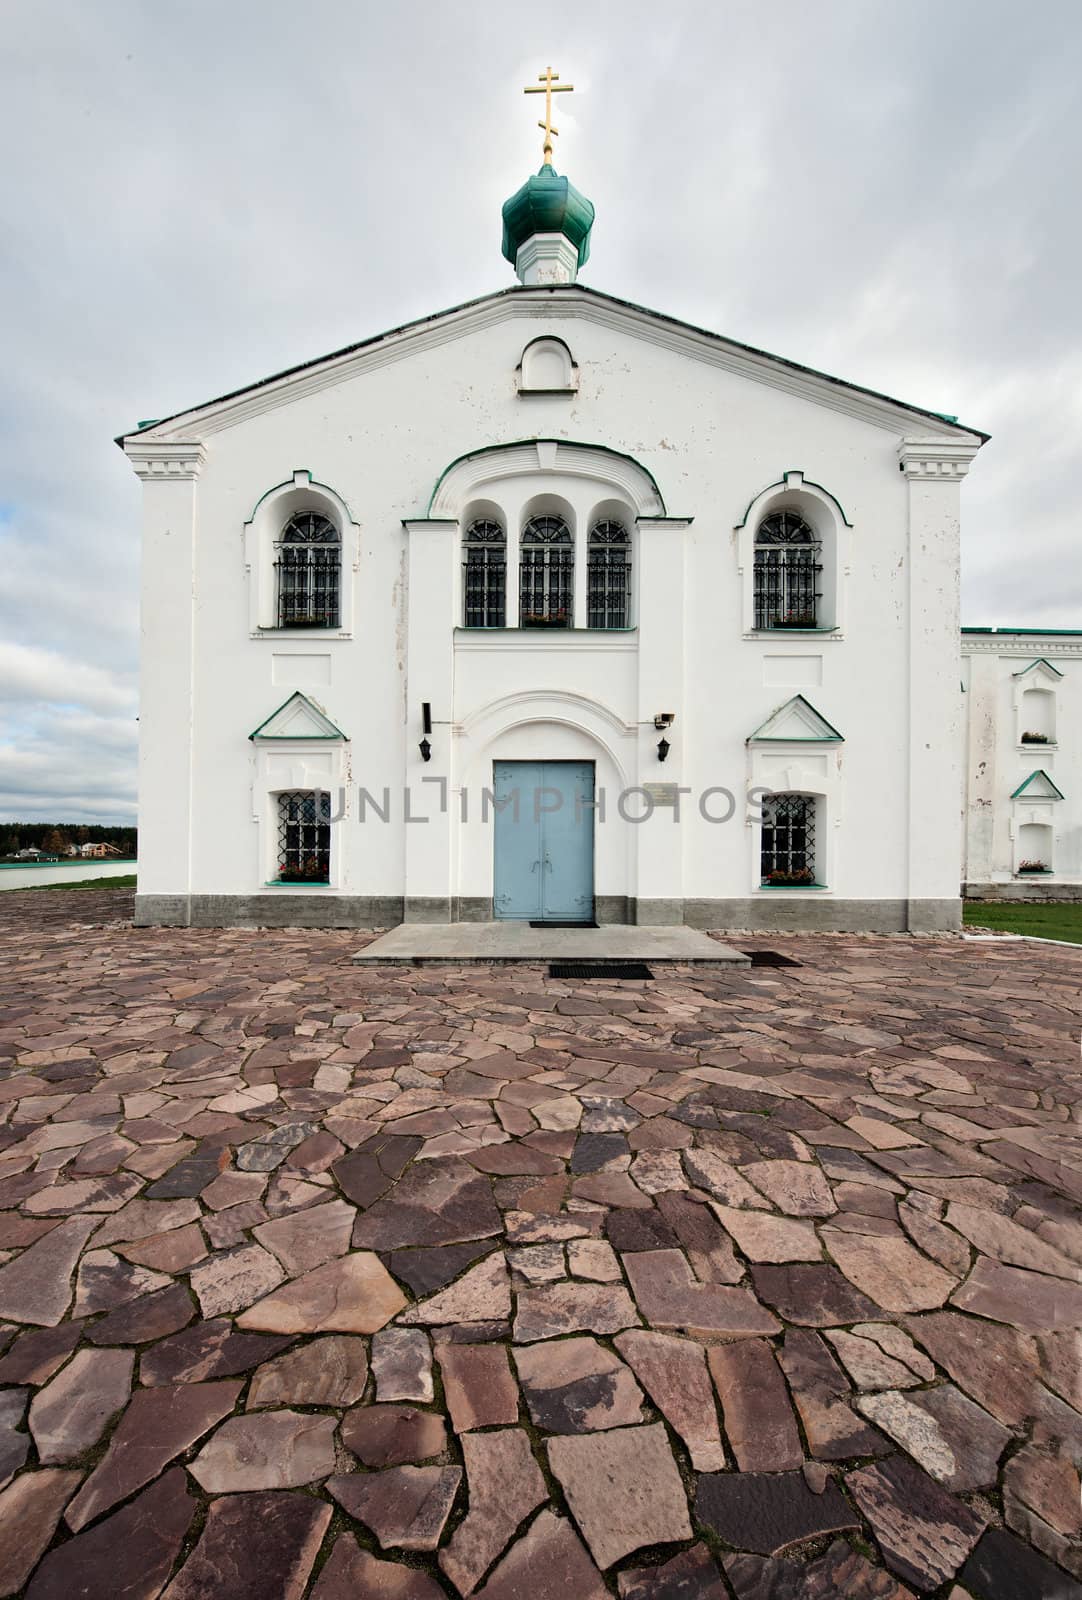 Aleksandro-Svirskiy monastery. Spaso-Preobrazhenskiy cathedral by SURZ